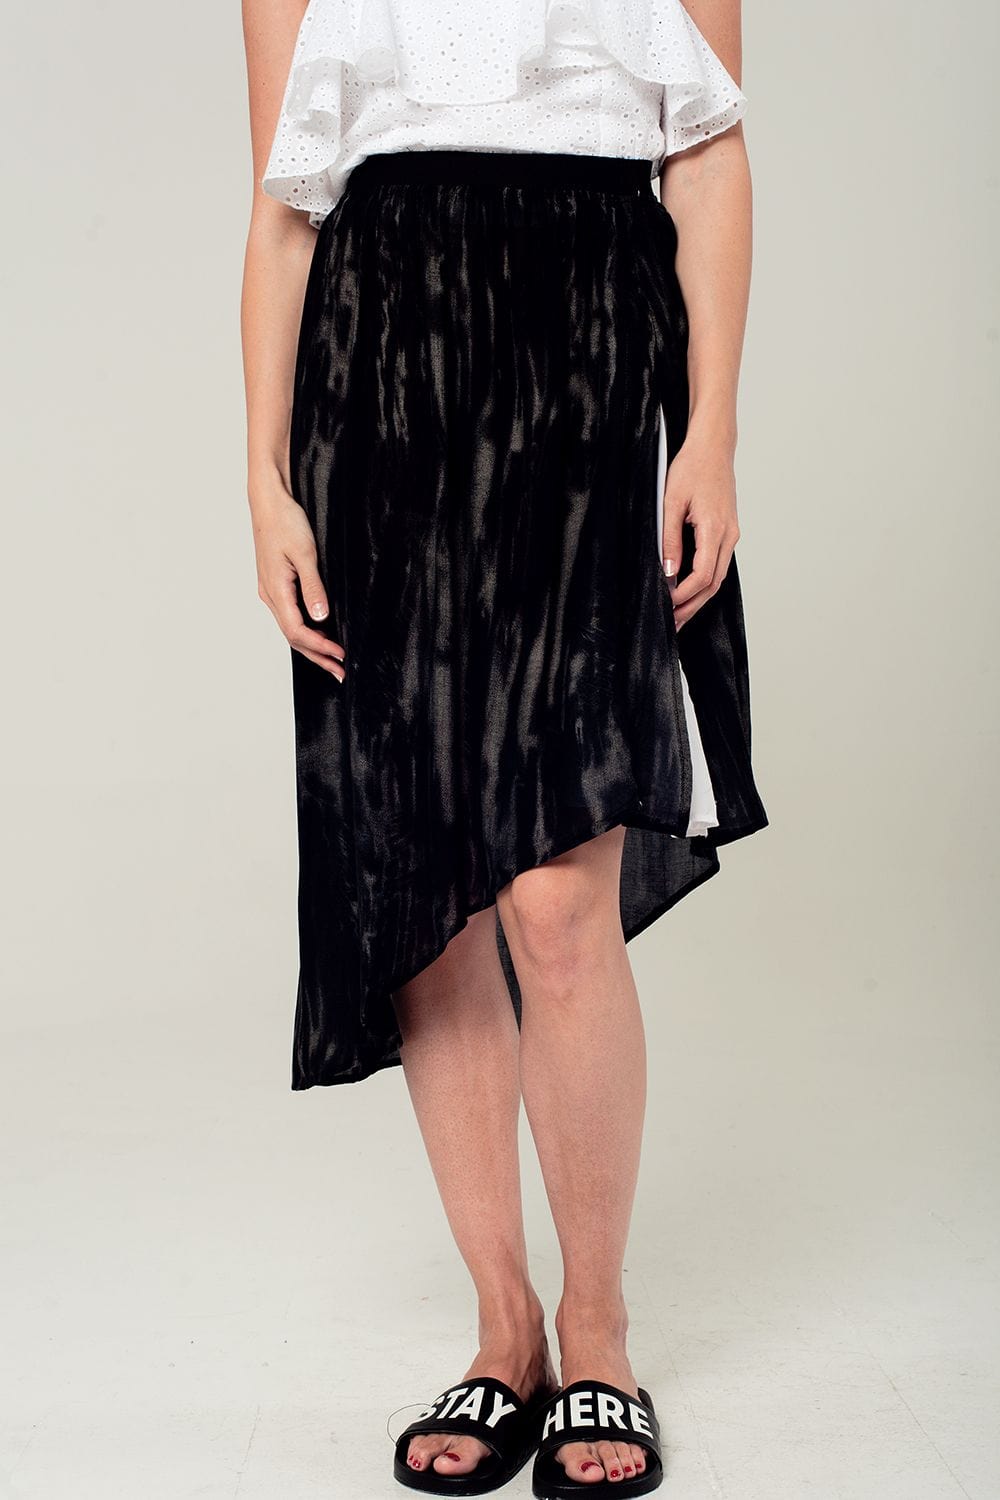 Q2 Women's Skirt Asymmetric hem skirt in black and gray print